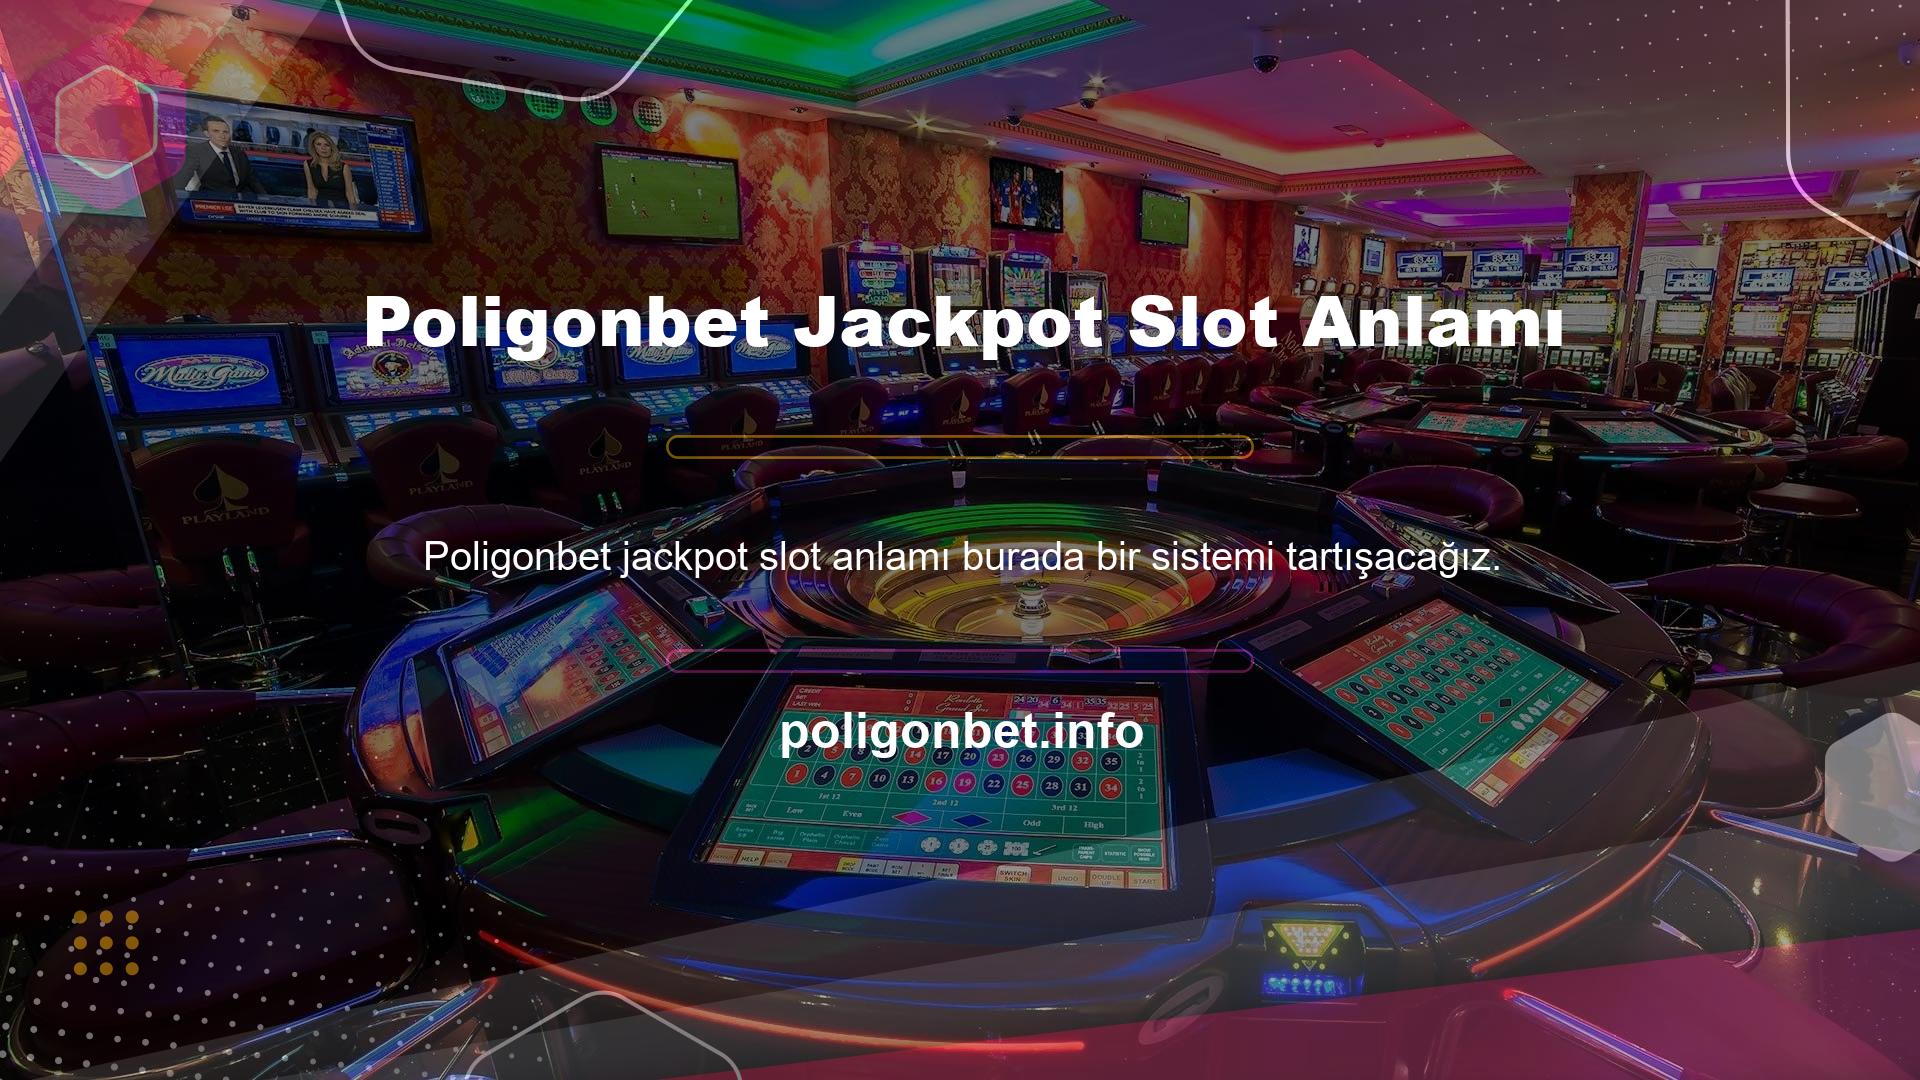 Poligonbet Jackpot Slot ne anlama gelir? Slot oyununu oynamak için, her Poligonbet Jackpot slotu, jeton satın alma işlemi sırasında satın alınan belirli sayıda jetonu otomatik olarak jackpot adı verilen bir havuza kilitler